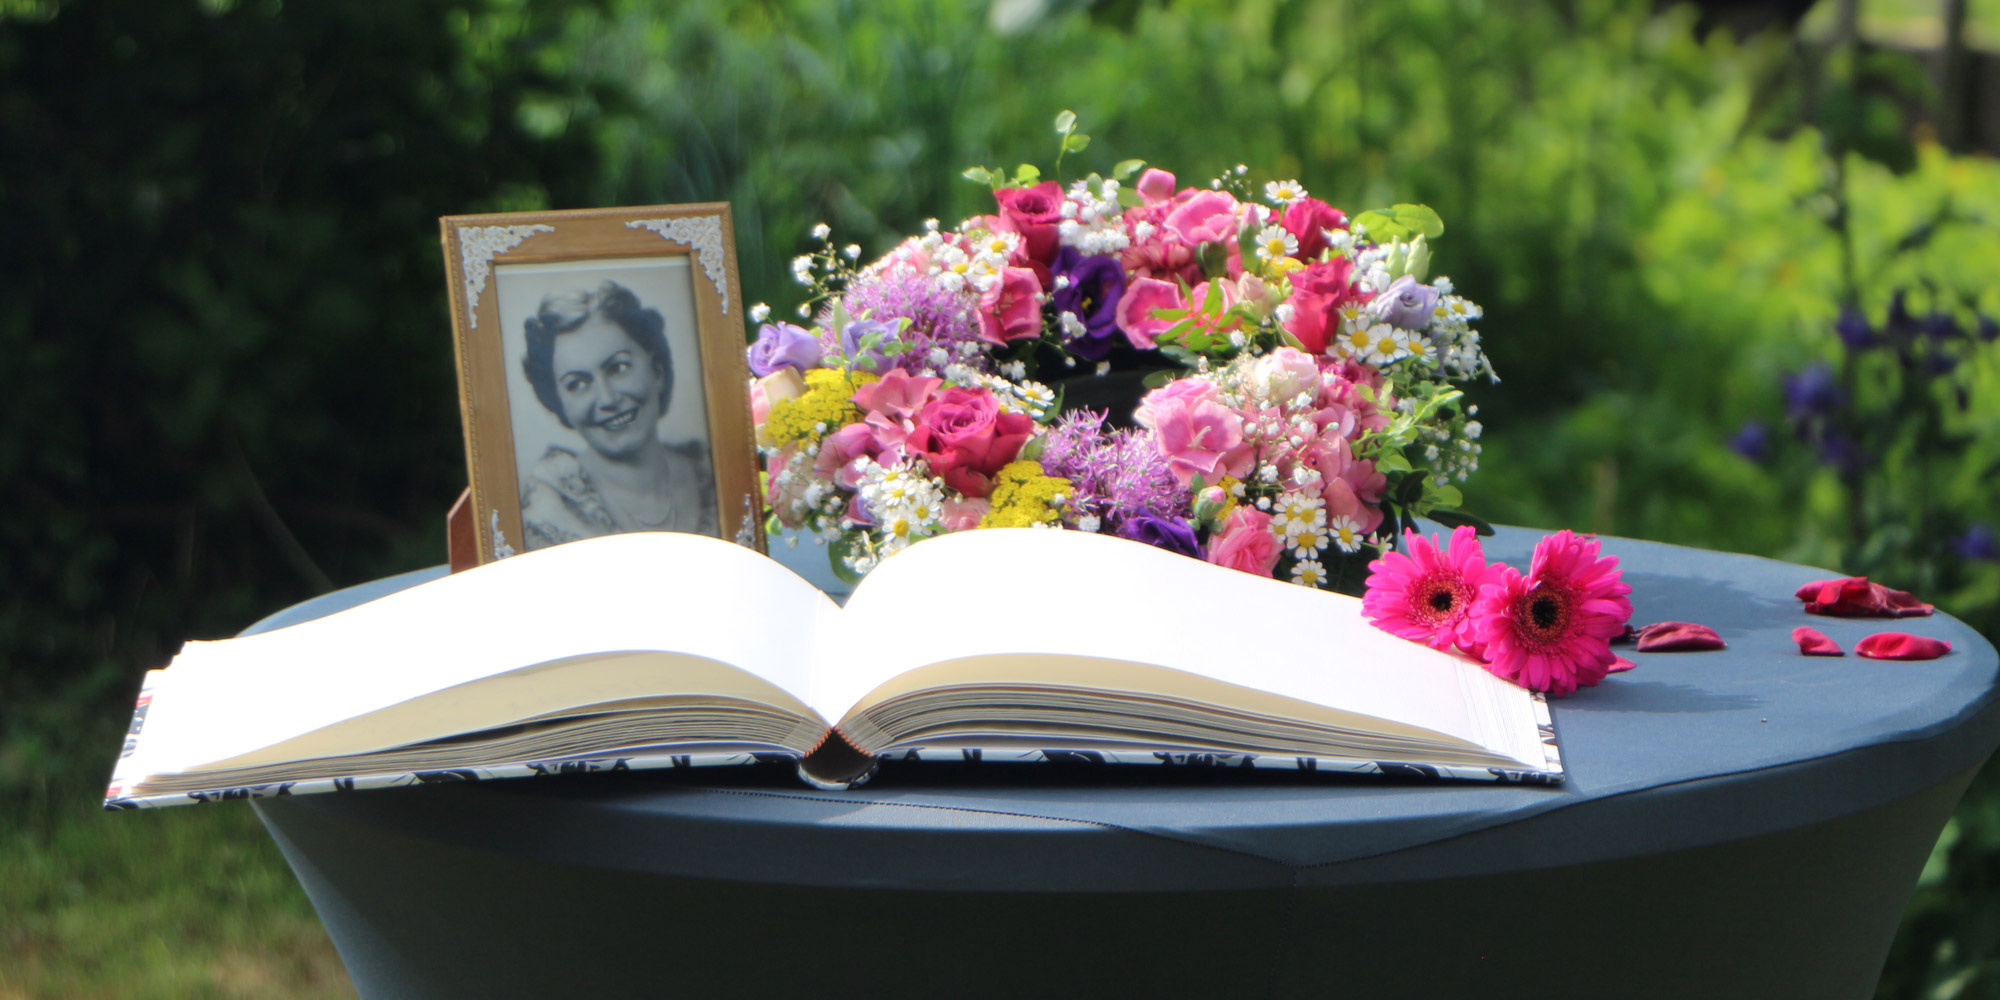 Kondolenzbuch auf einer Beerdigung - auch hilfreich, um Trauer zu verarbeiten